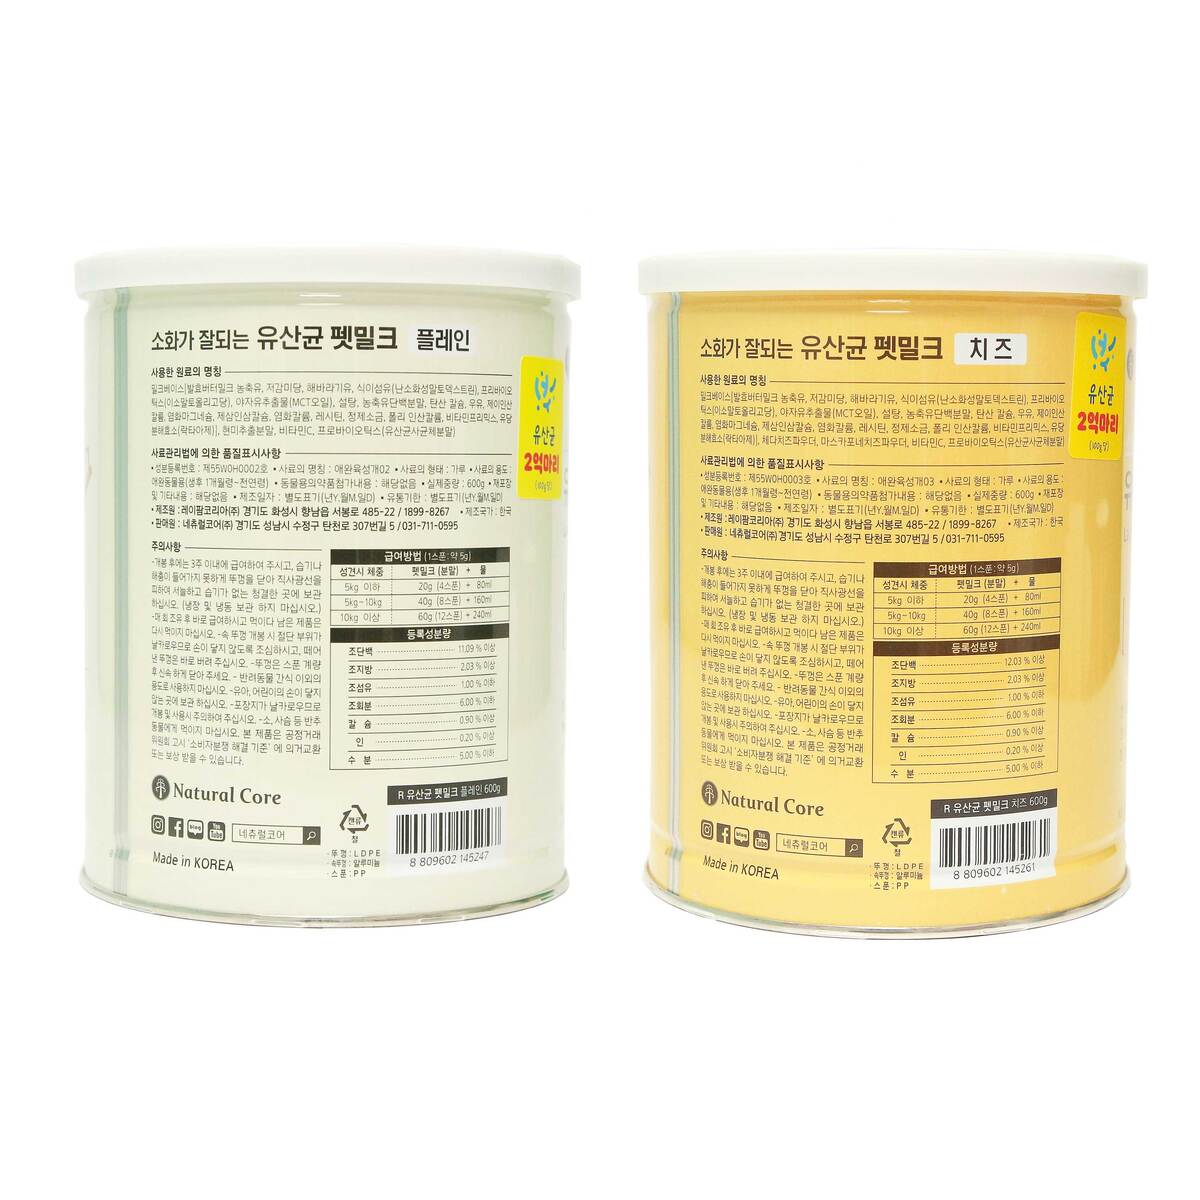 네츄럴 코어 유산균 펫밀크 파우더 600g - 플레인1 + 치즈1